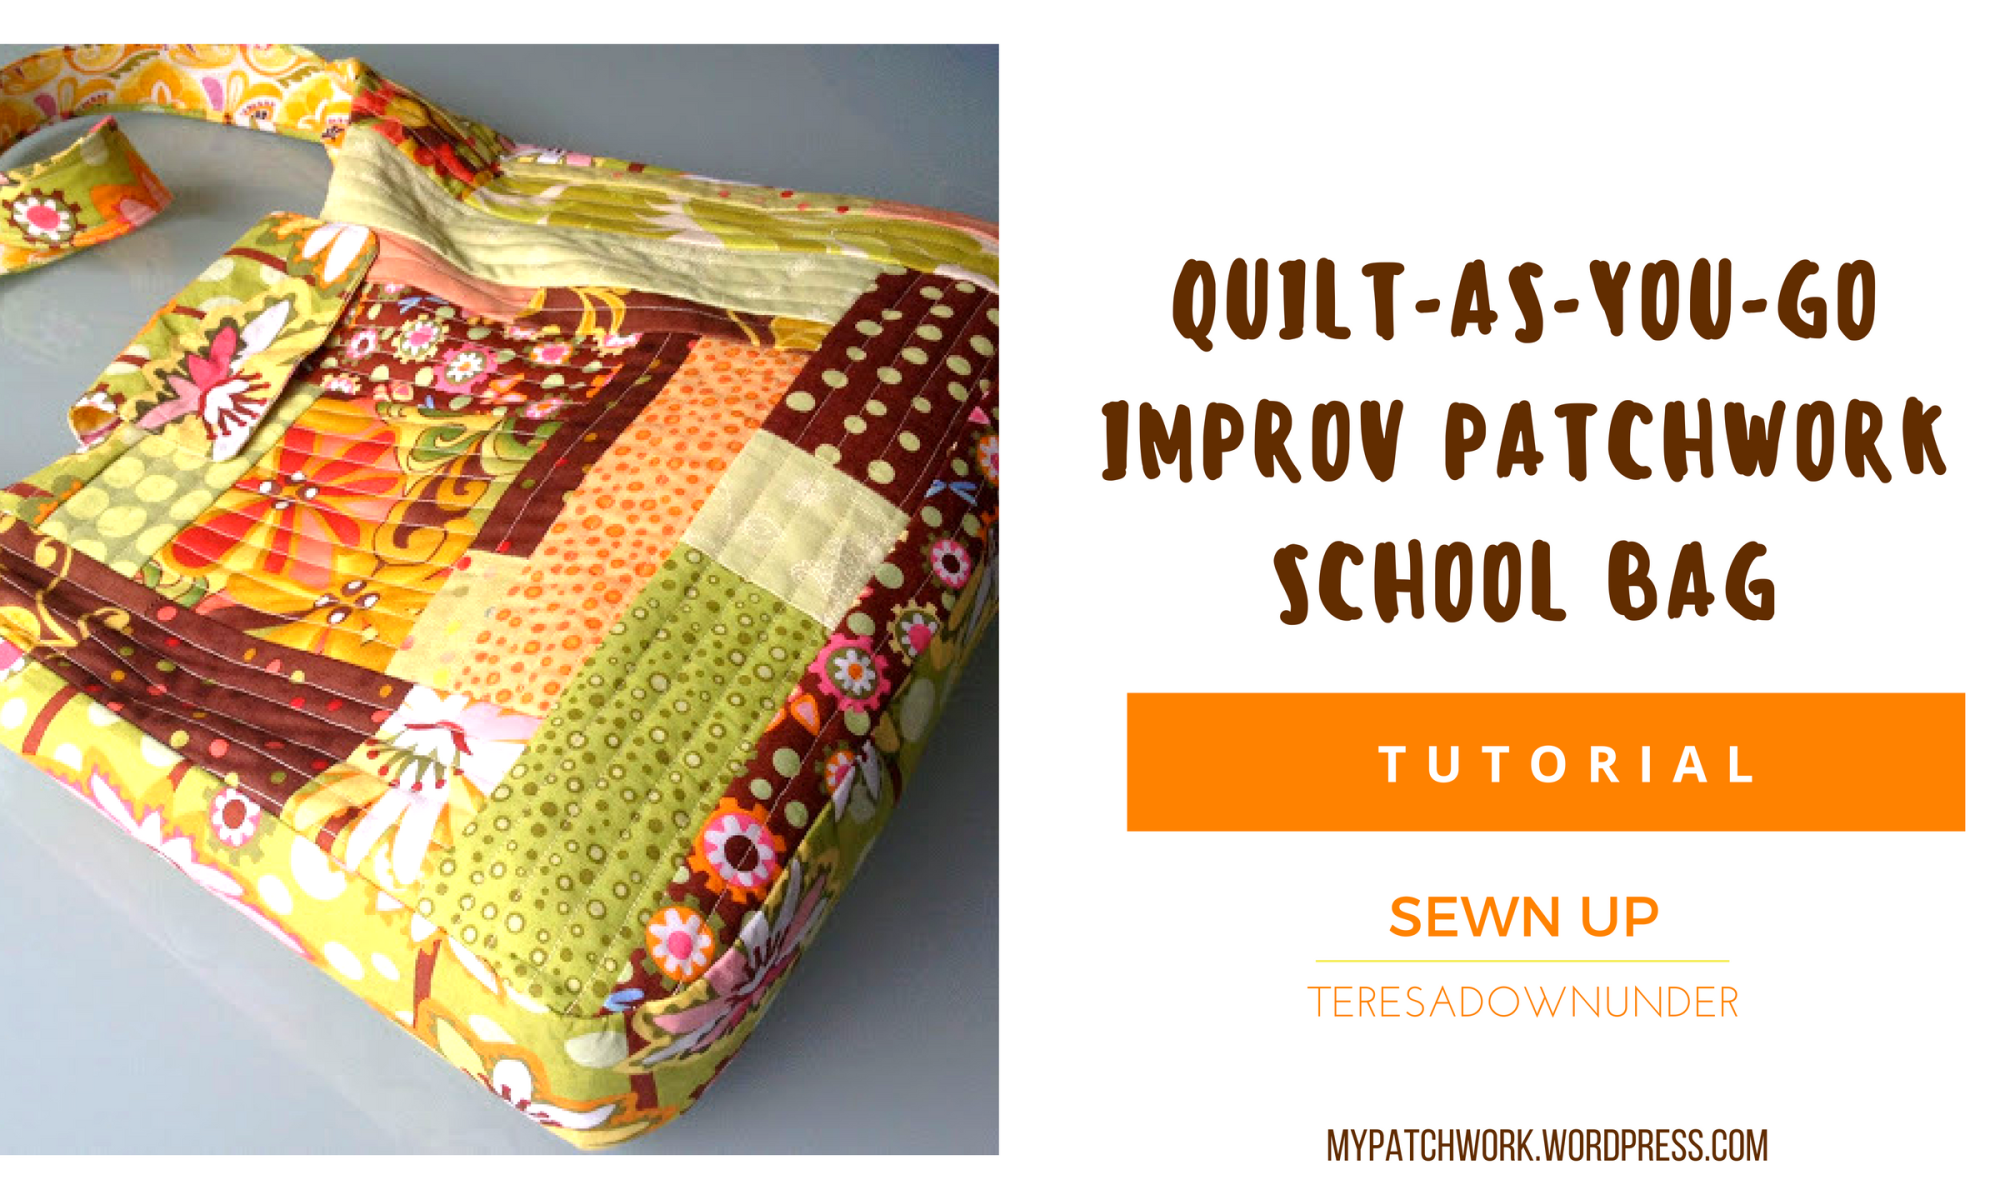 Tutorial: quilt as you go improv patchwork school bag